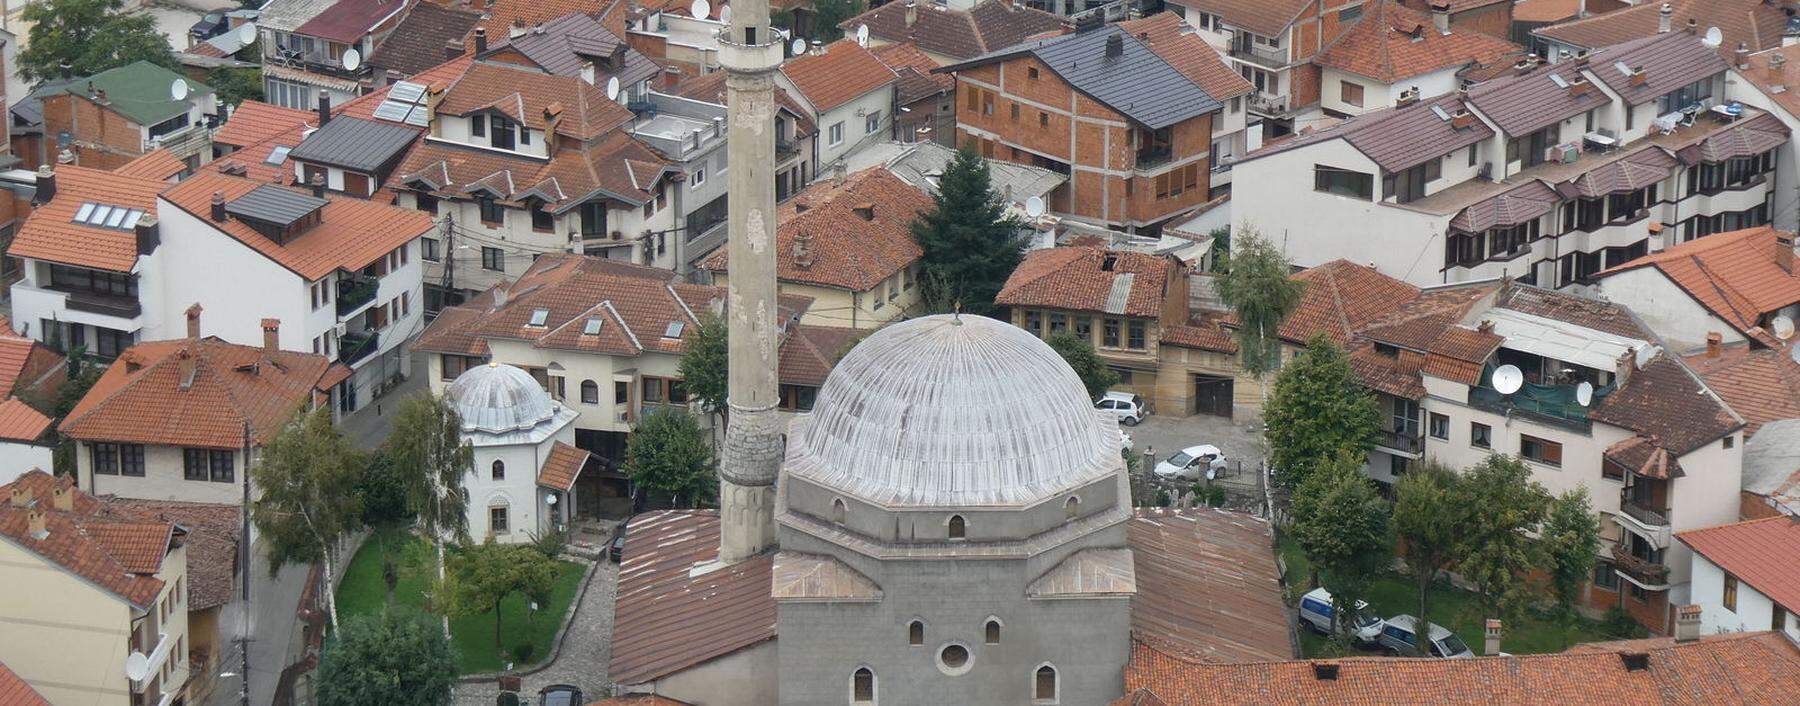 Prizren, die zweitgrößte Stadt im Kosovo. In der Mitte: die Sinan-Pascha-Moschee.